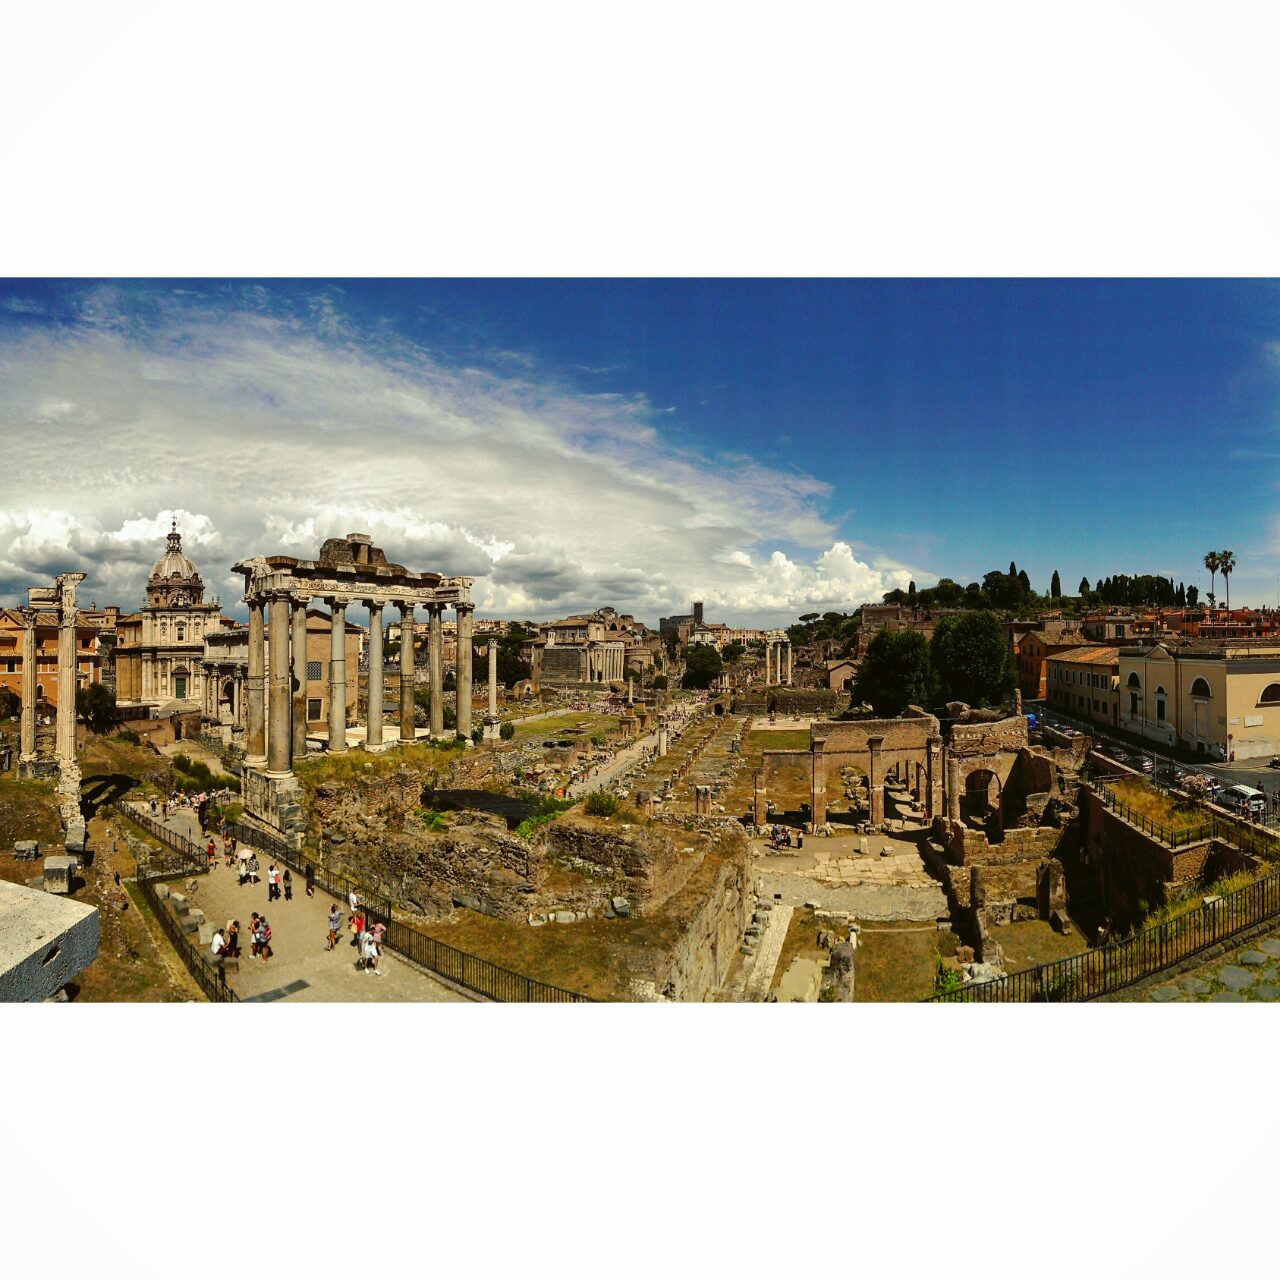 Римский форум 360 - Экскурсия по Риму